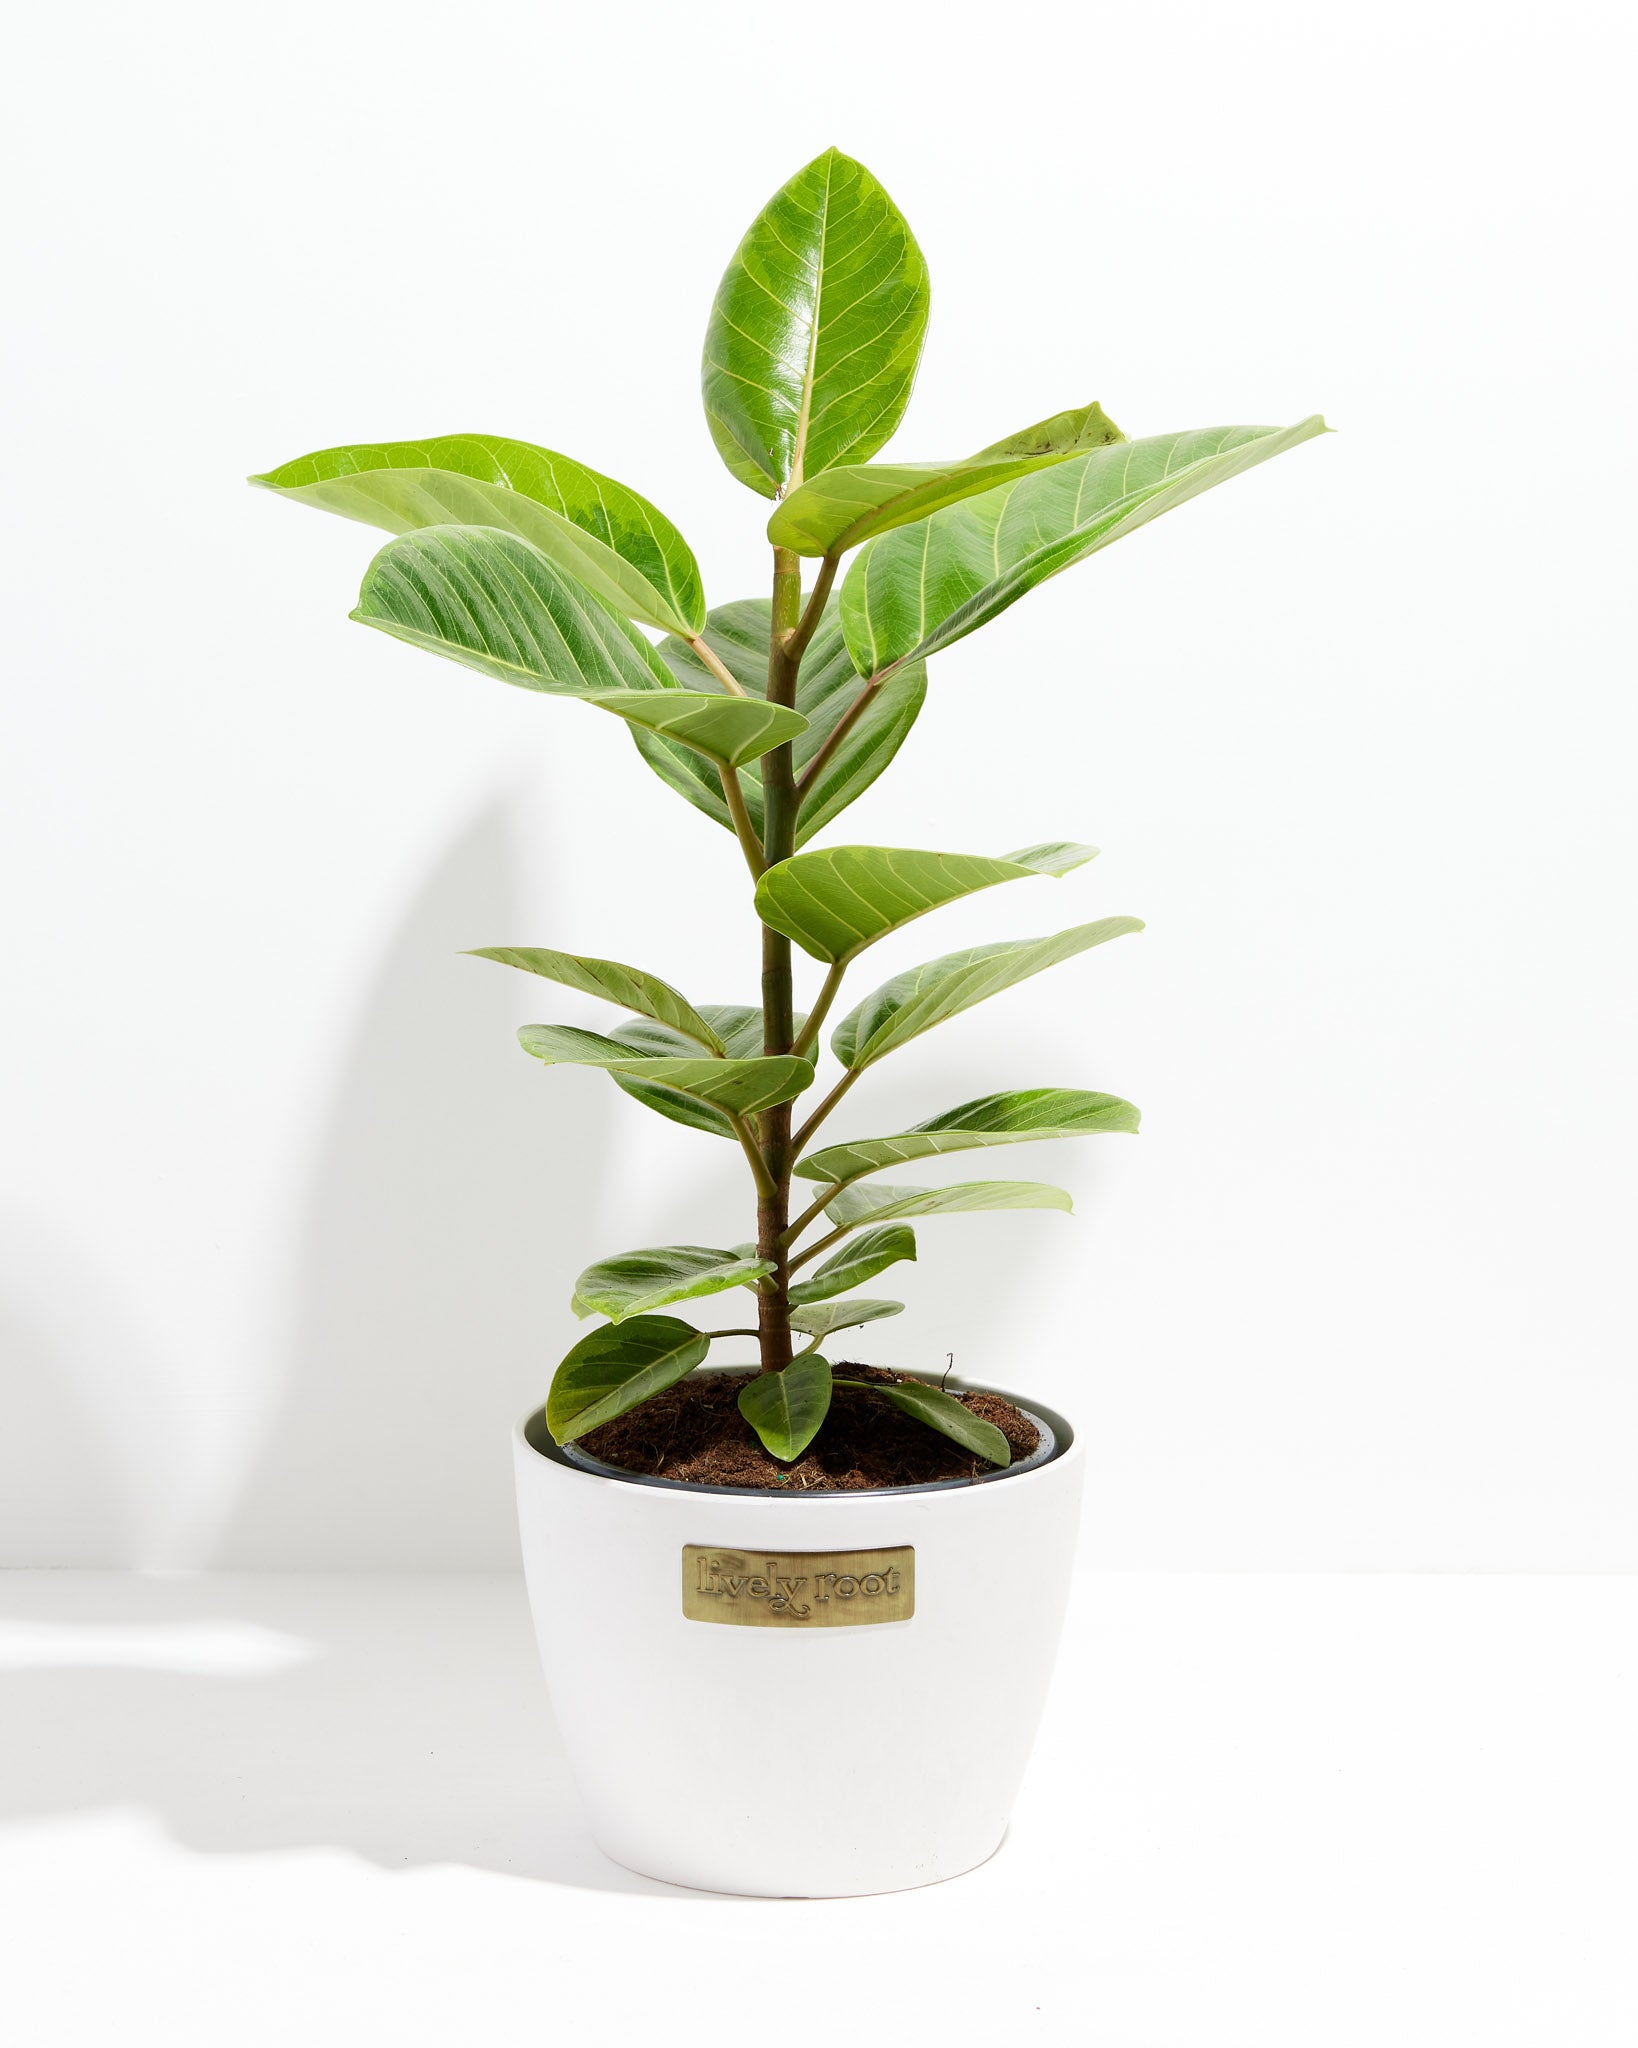 Ficus Audrey | Velvet Green Leaves | Lively Root